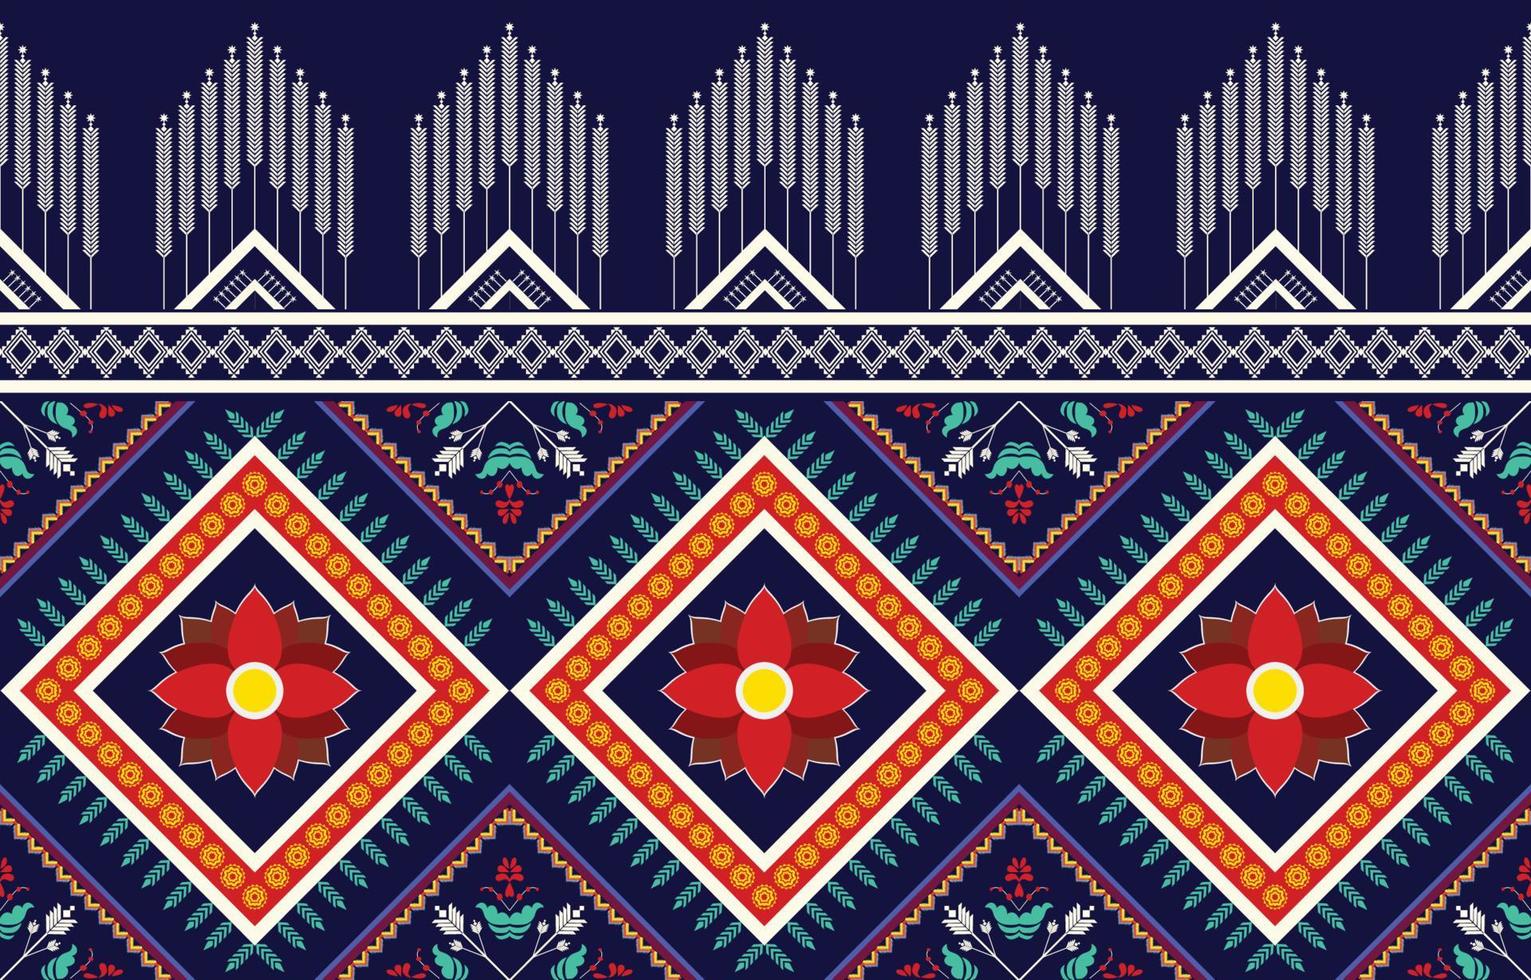 Triángulo geométrico y patrón de adorno floral colorido, estilo de textura étnica tribal, diseño para imprimir en productos, fondo, bufanda, ropa, envoltura, tela, ilustración vectorial. vector